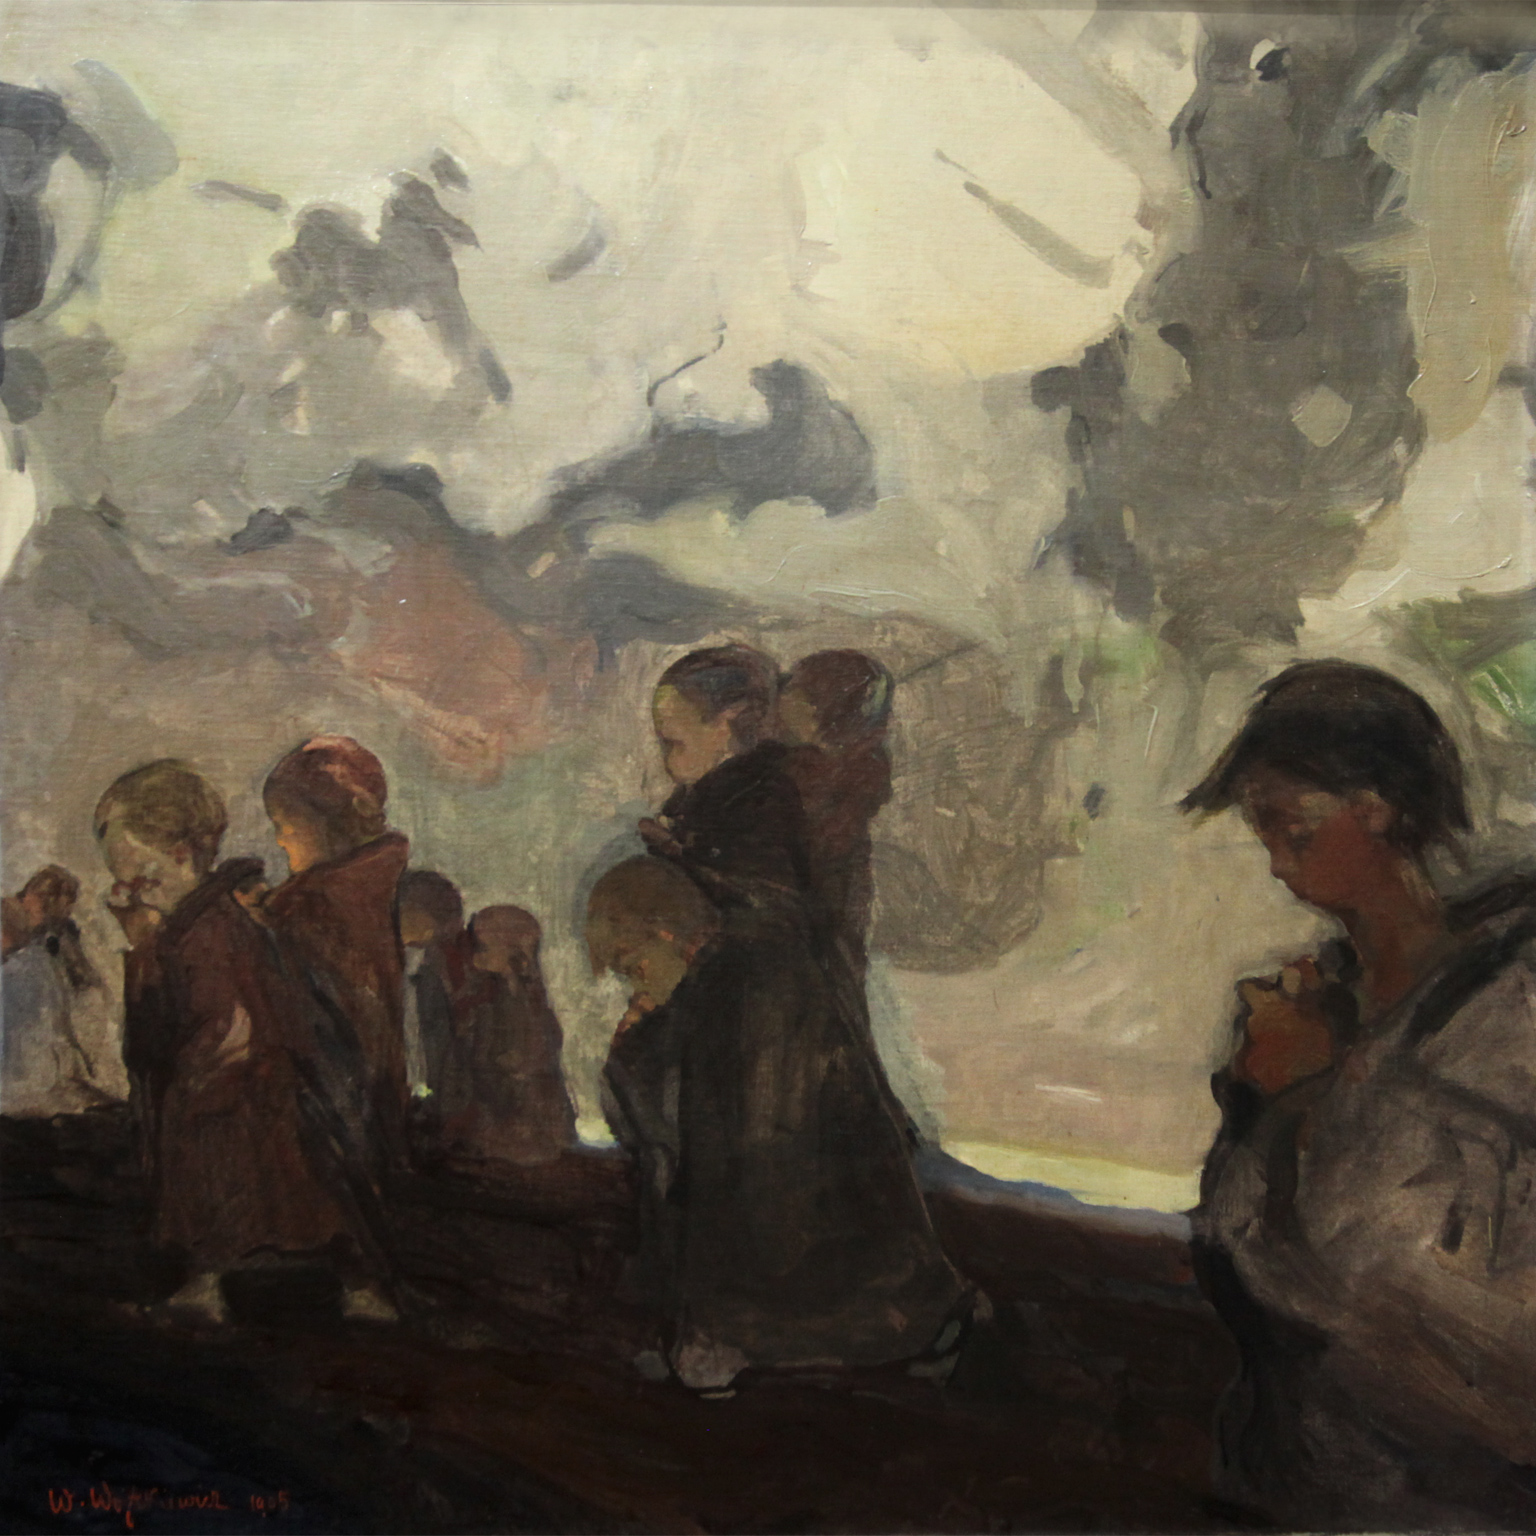 Witold Wojtkiewicz, "Krucjata dziecięca", 1905